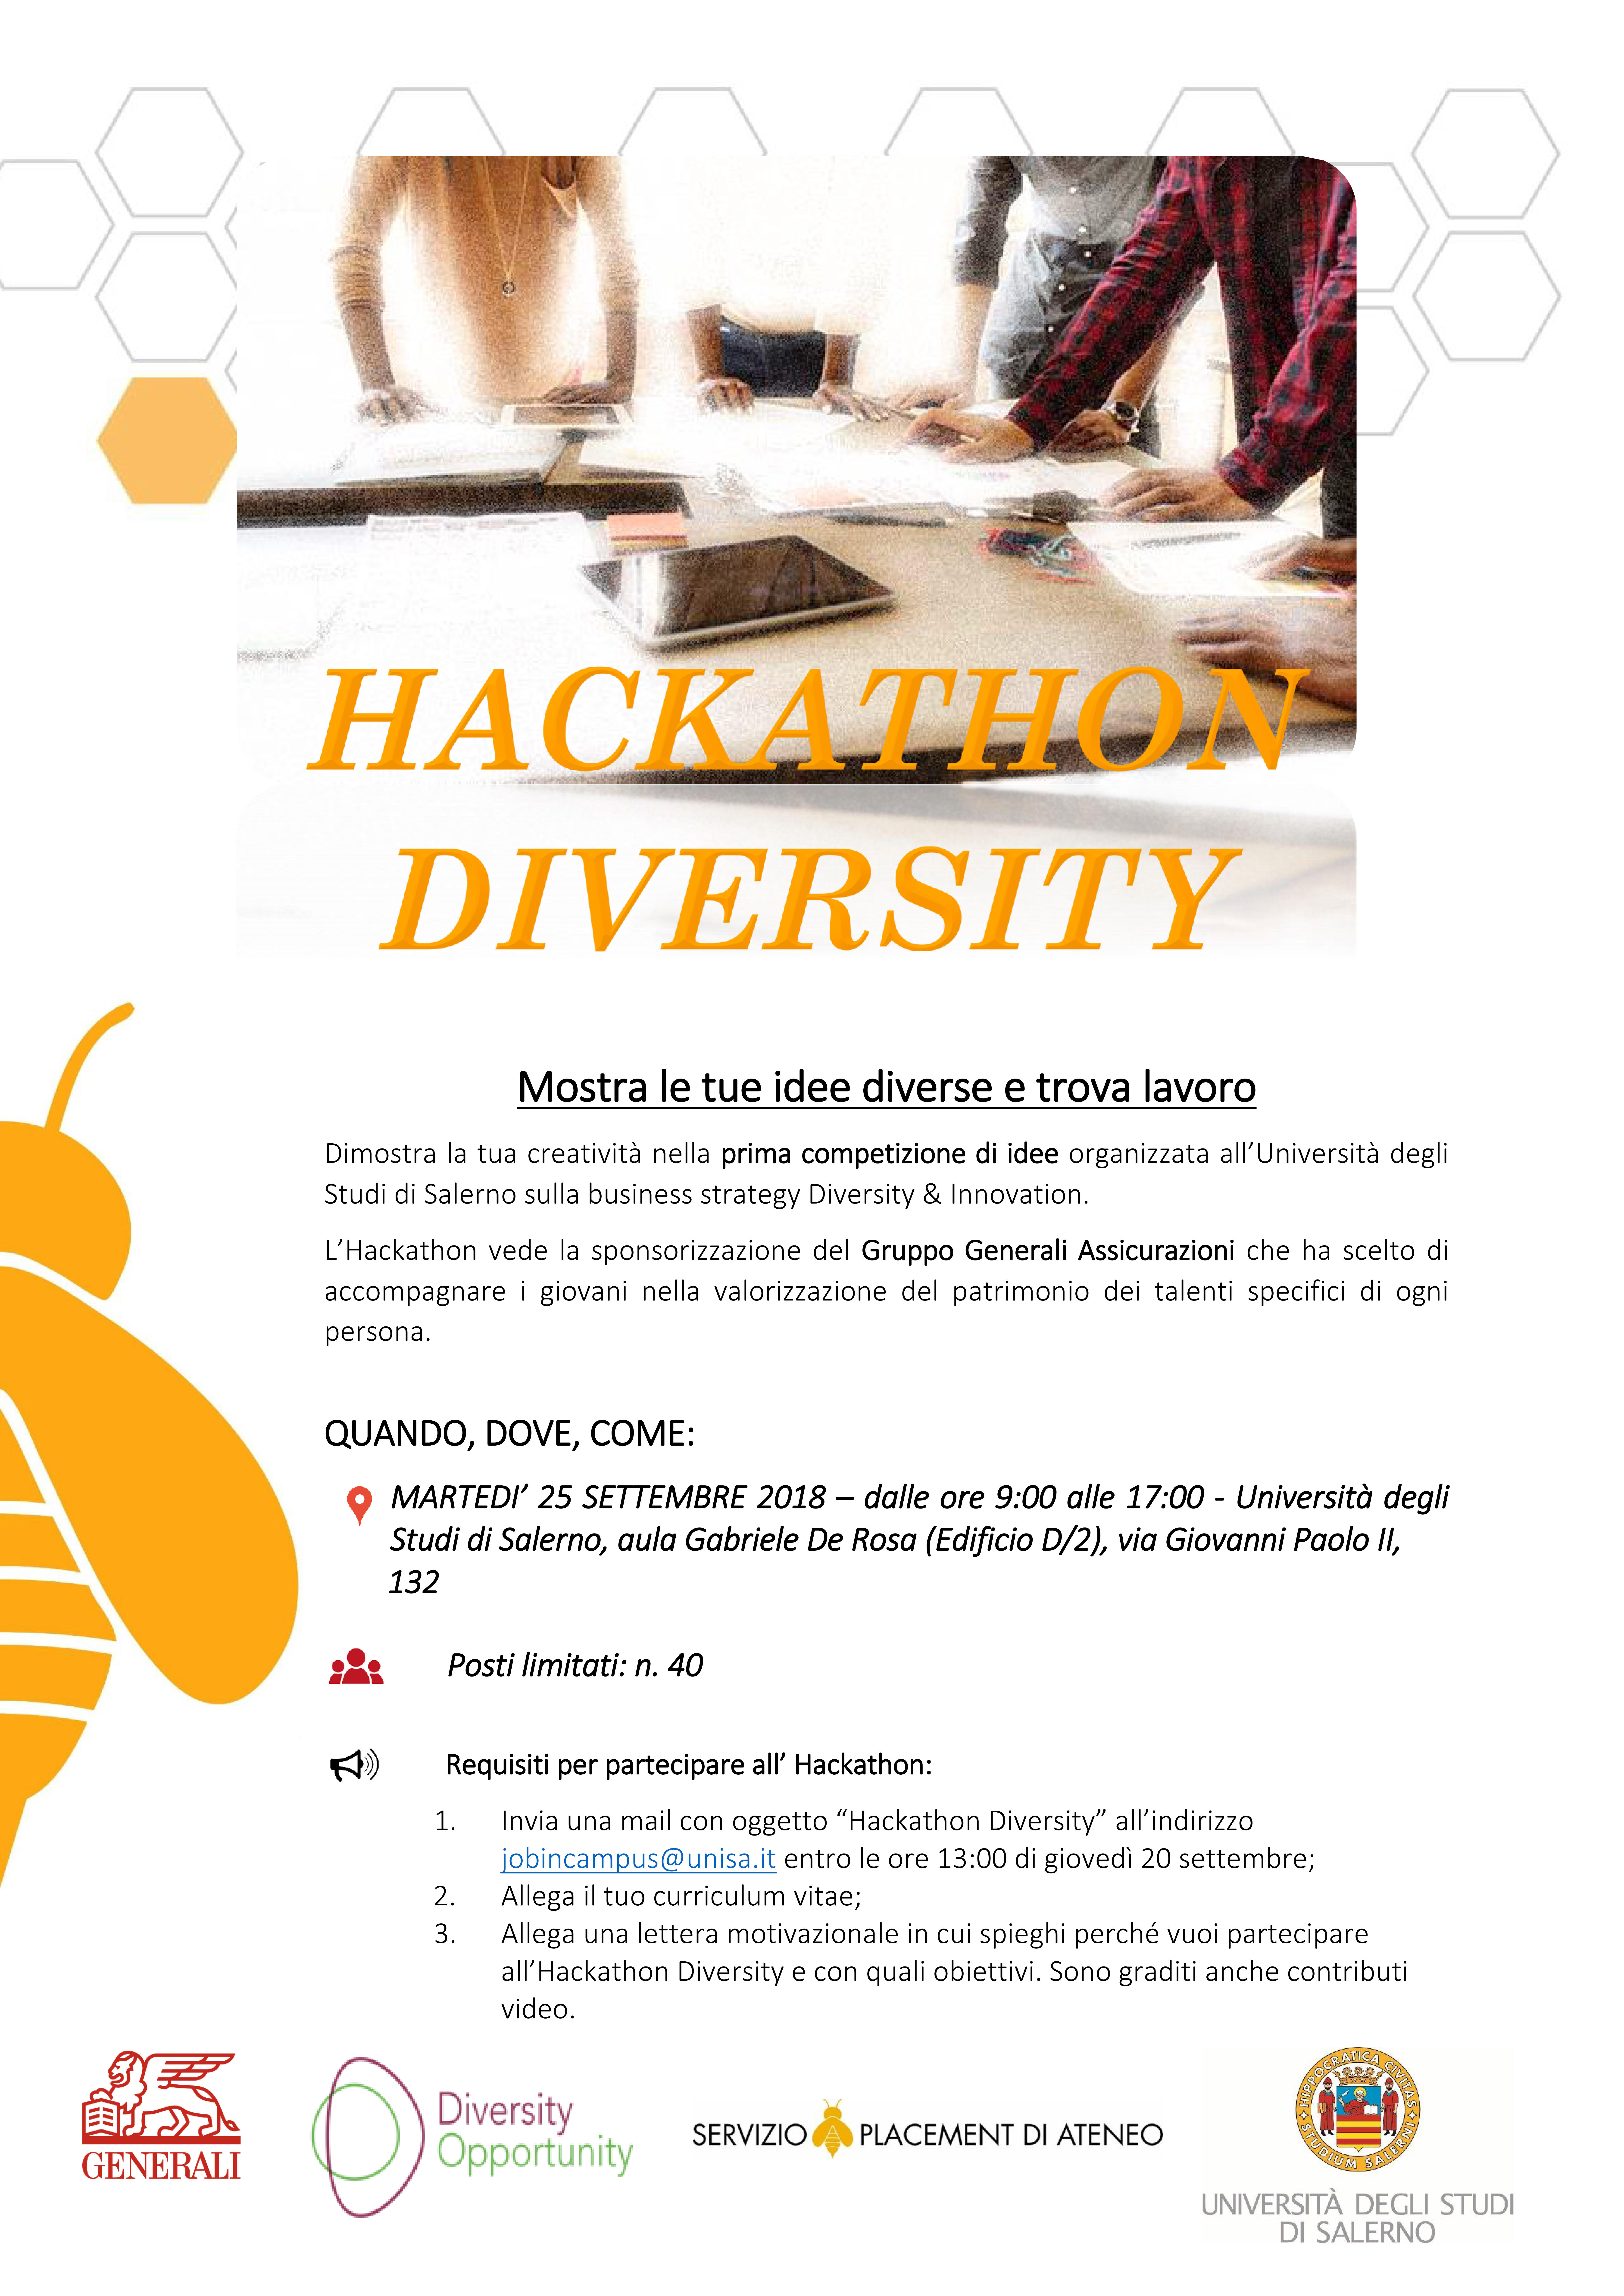 Hackathon – Diversity - Mostra le tue idee diverse e trova lavoro